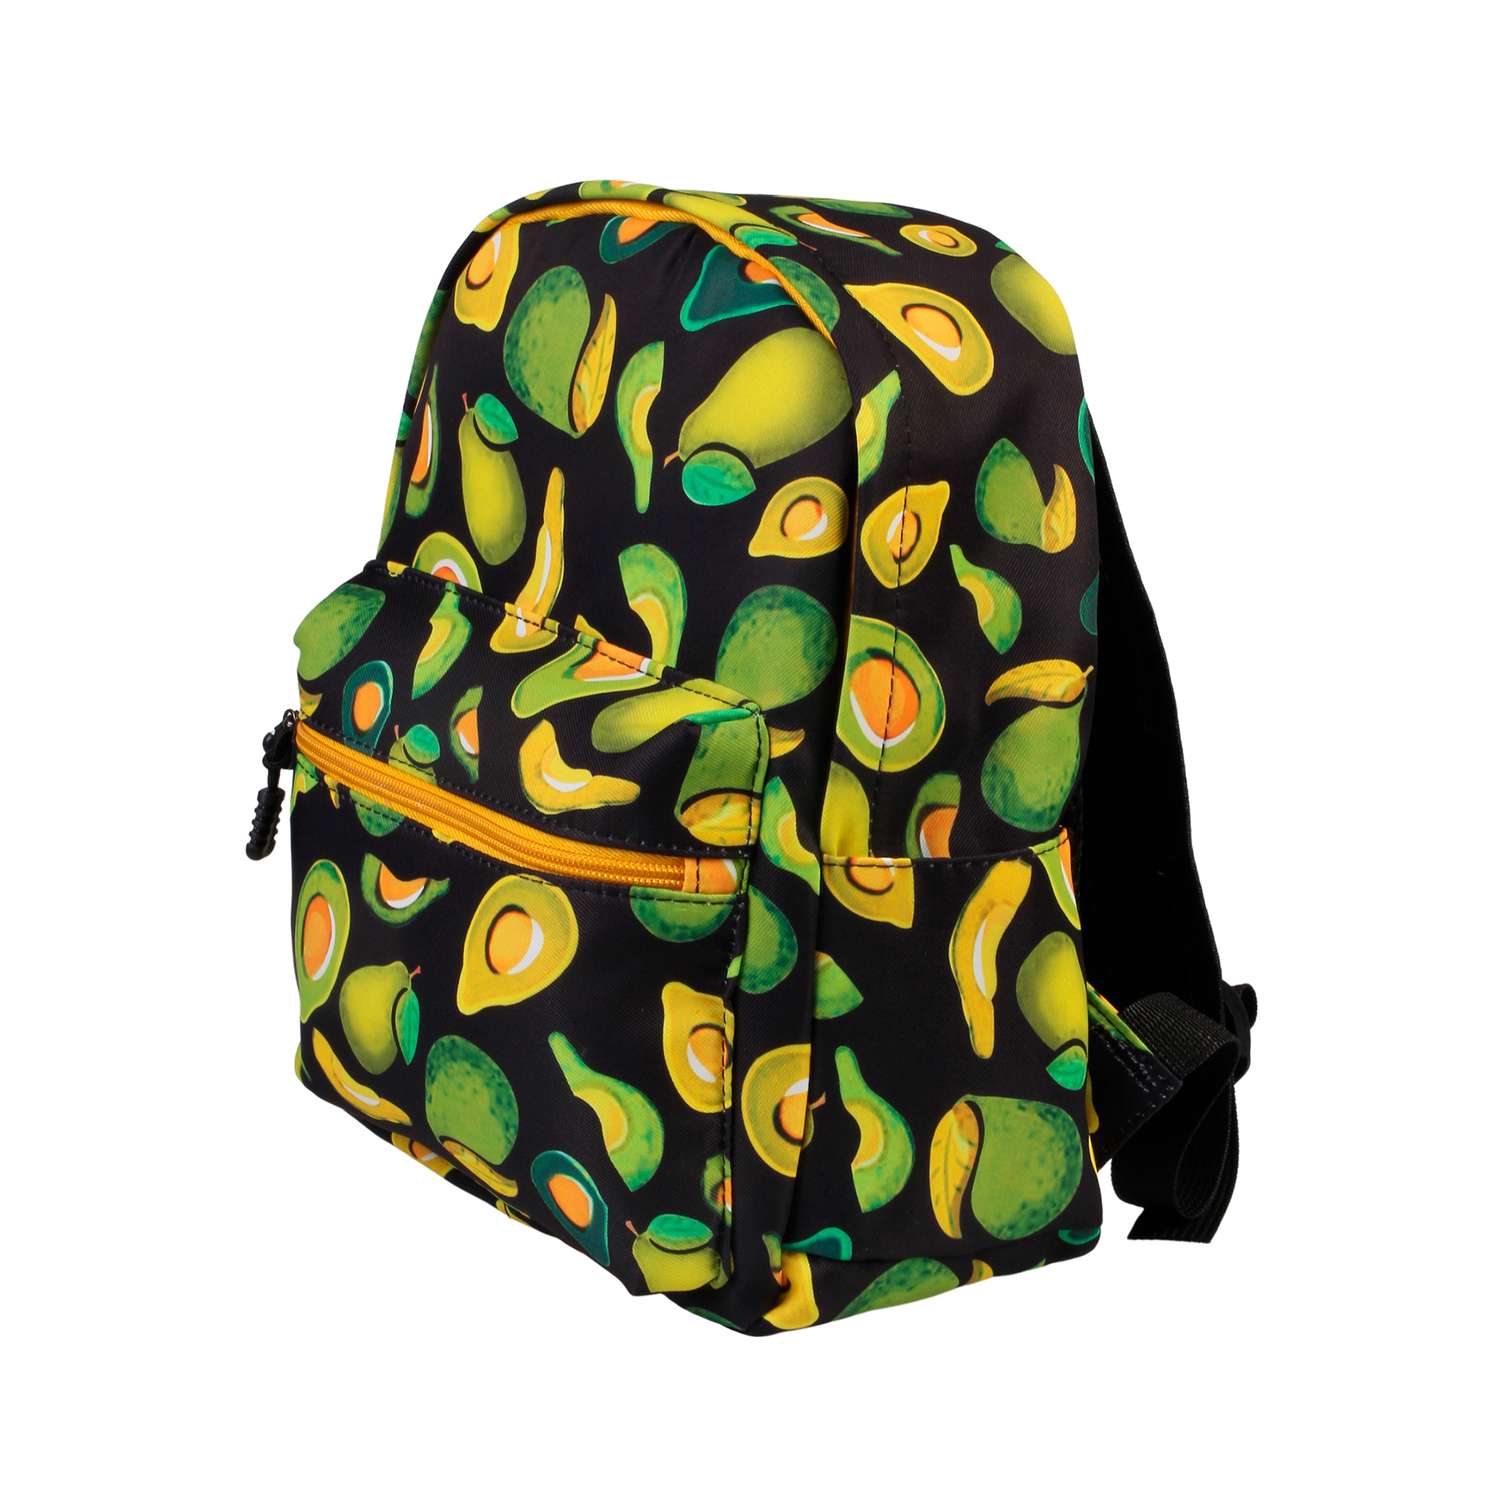 Рюкзак Little Mania черный Авокадо желто-зеленый - фото 2